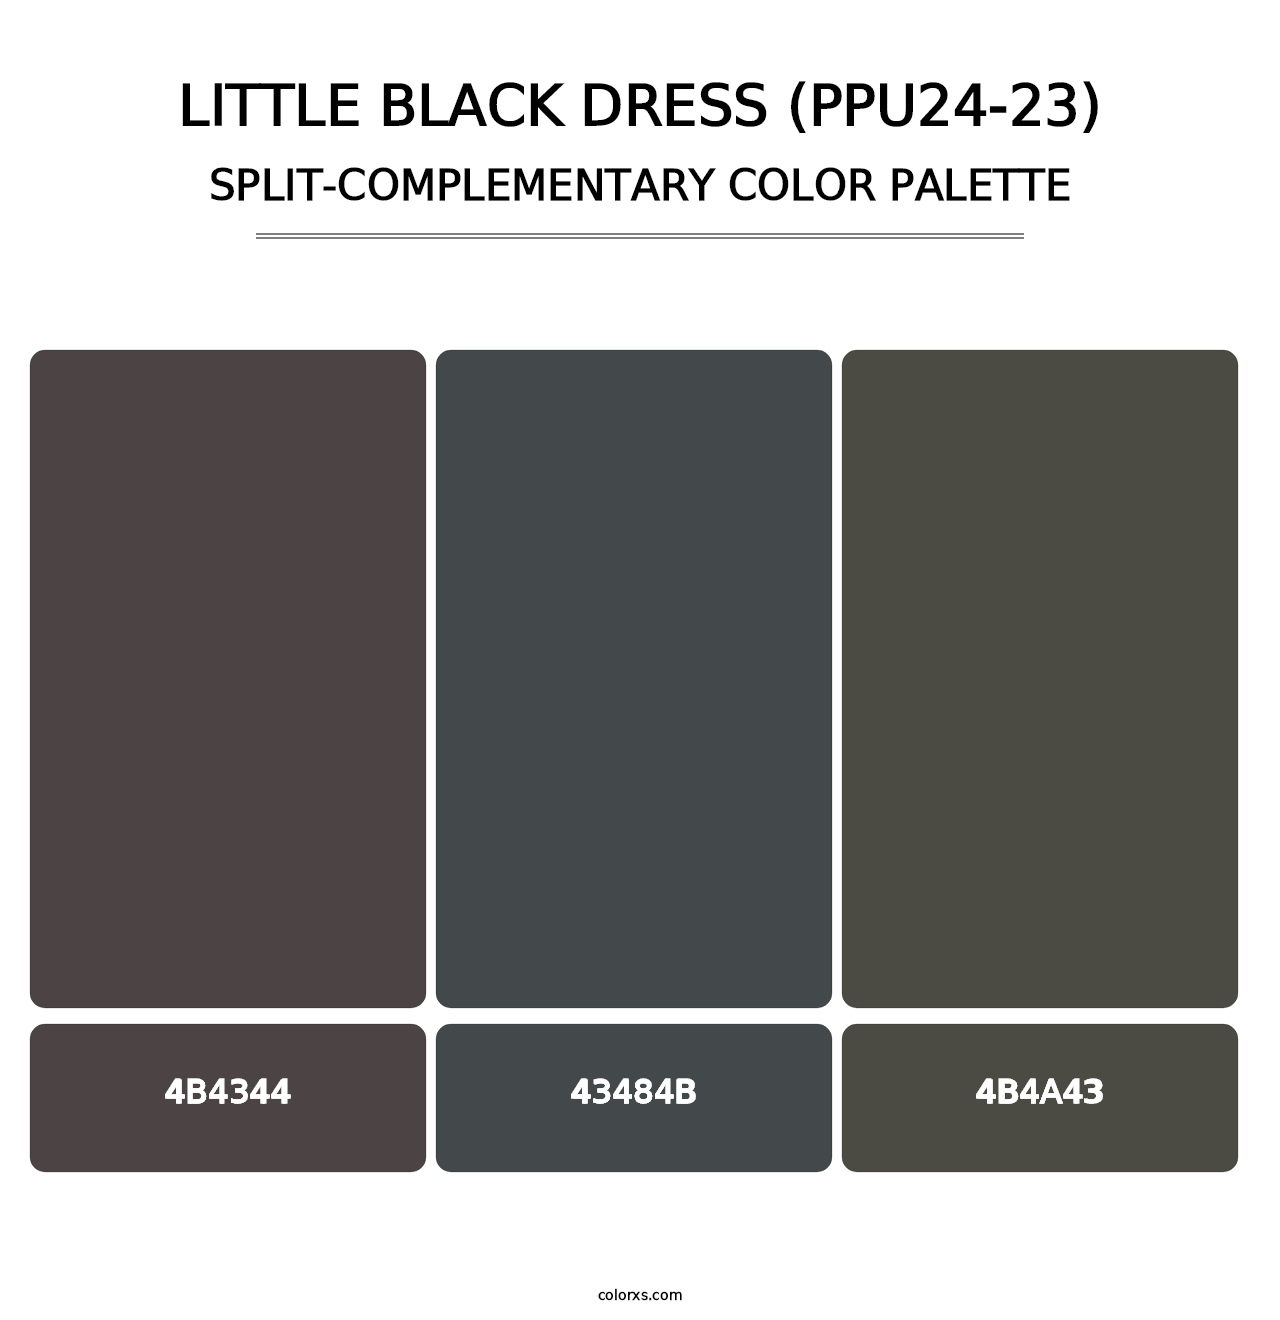 Little Black Dress (PPU24-23) - Split-Complementary Color Palette